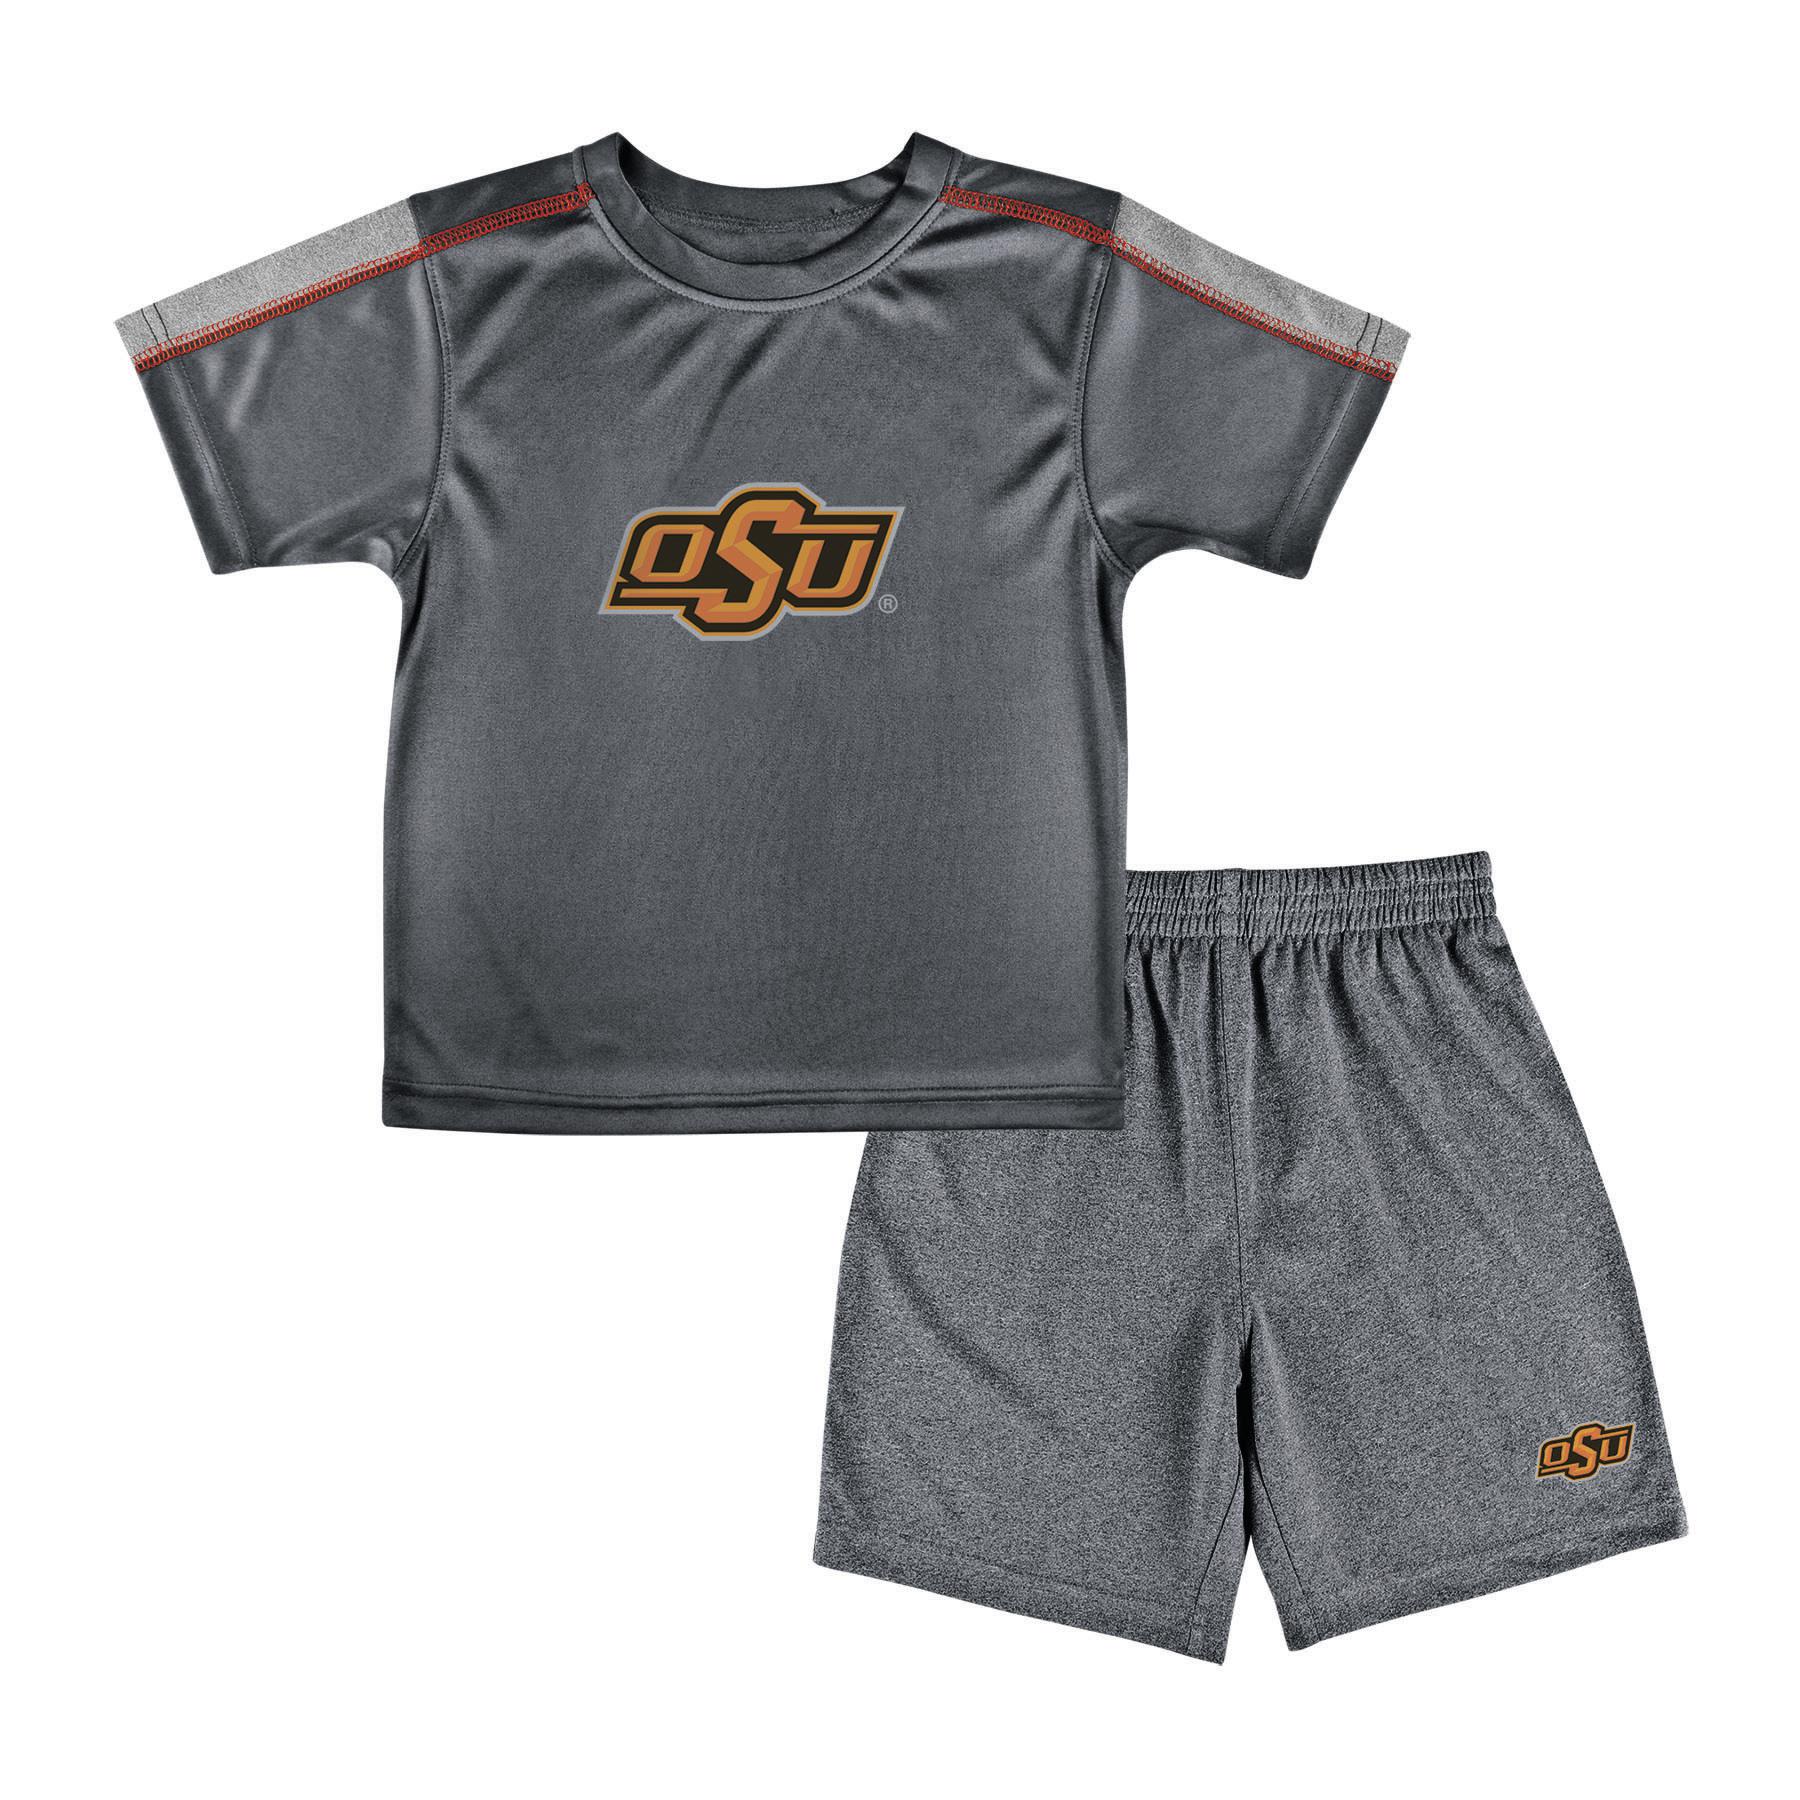 NCAA Toddler Boys' T-Shirt & Shorts - Oklahoma State Cowboys